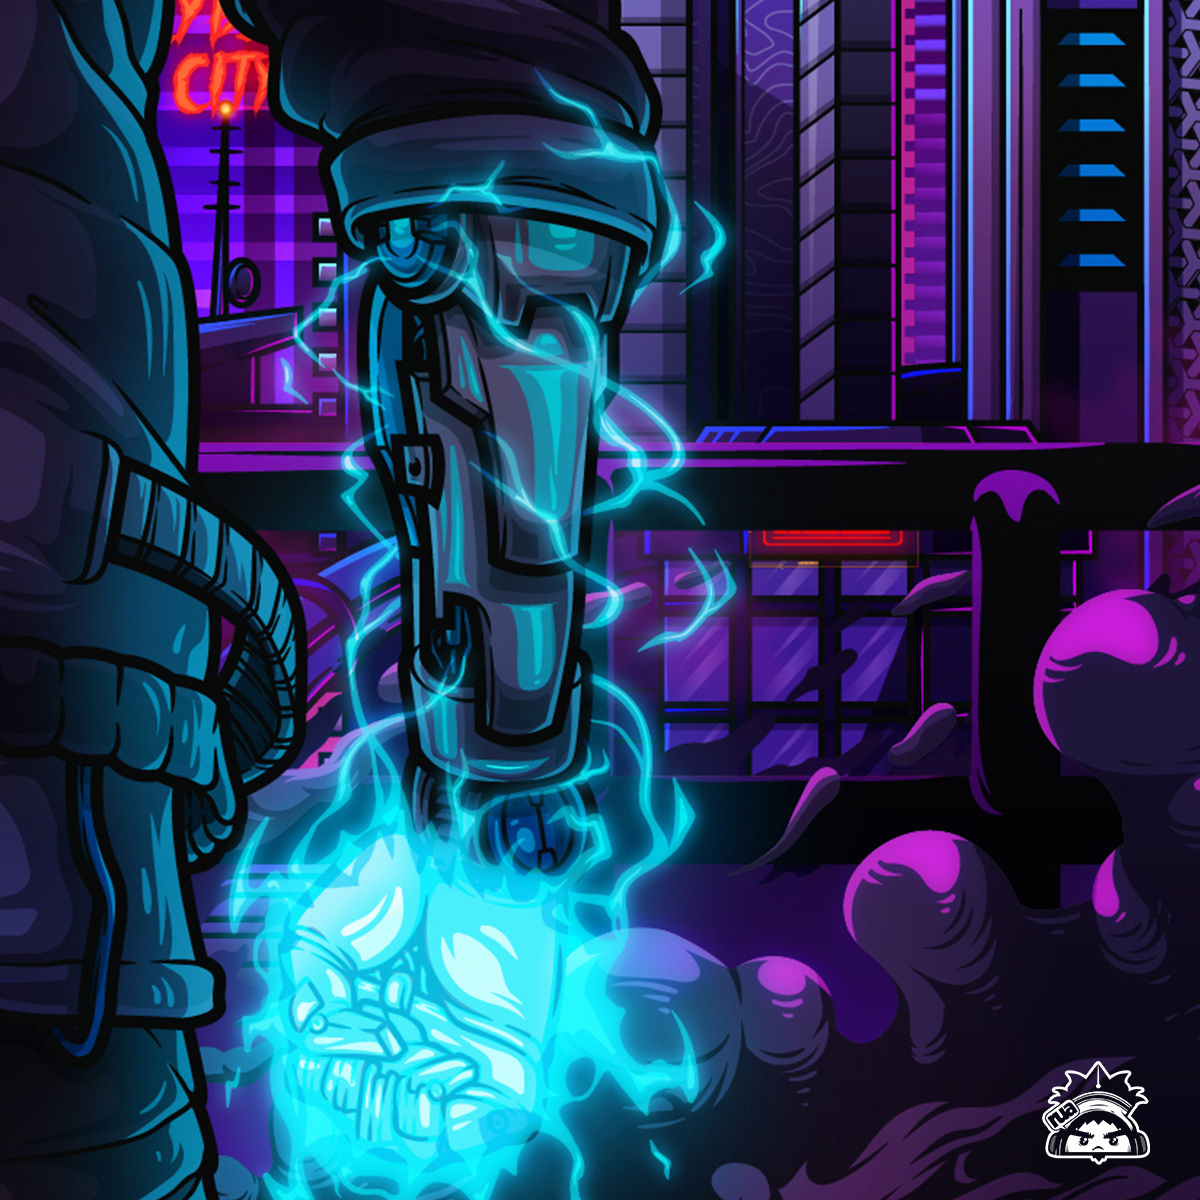 art album cover vector ILLUSTRATION  Character design  adobe illustrator Graphic Designer Cyberpunk futuristic sci-fi